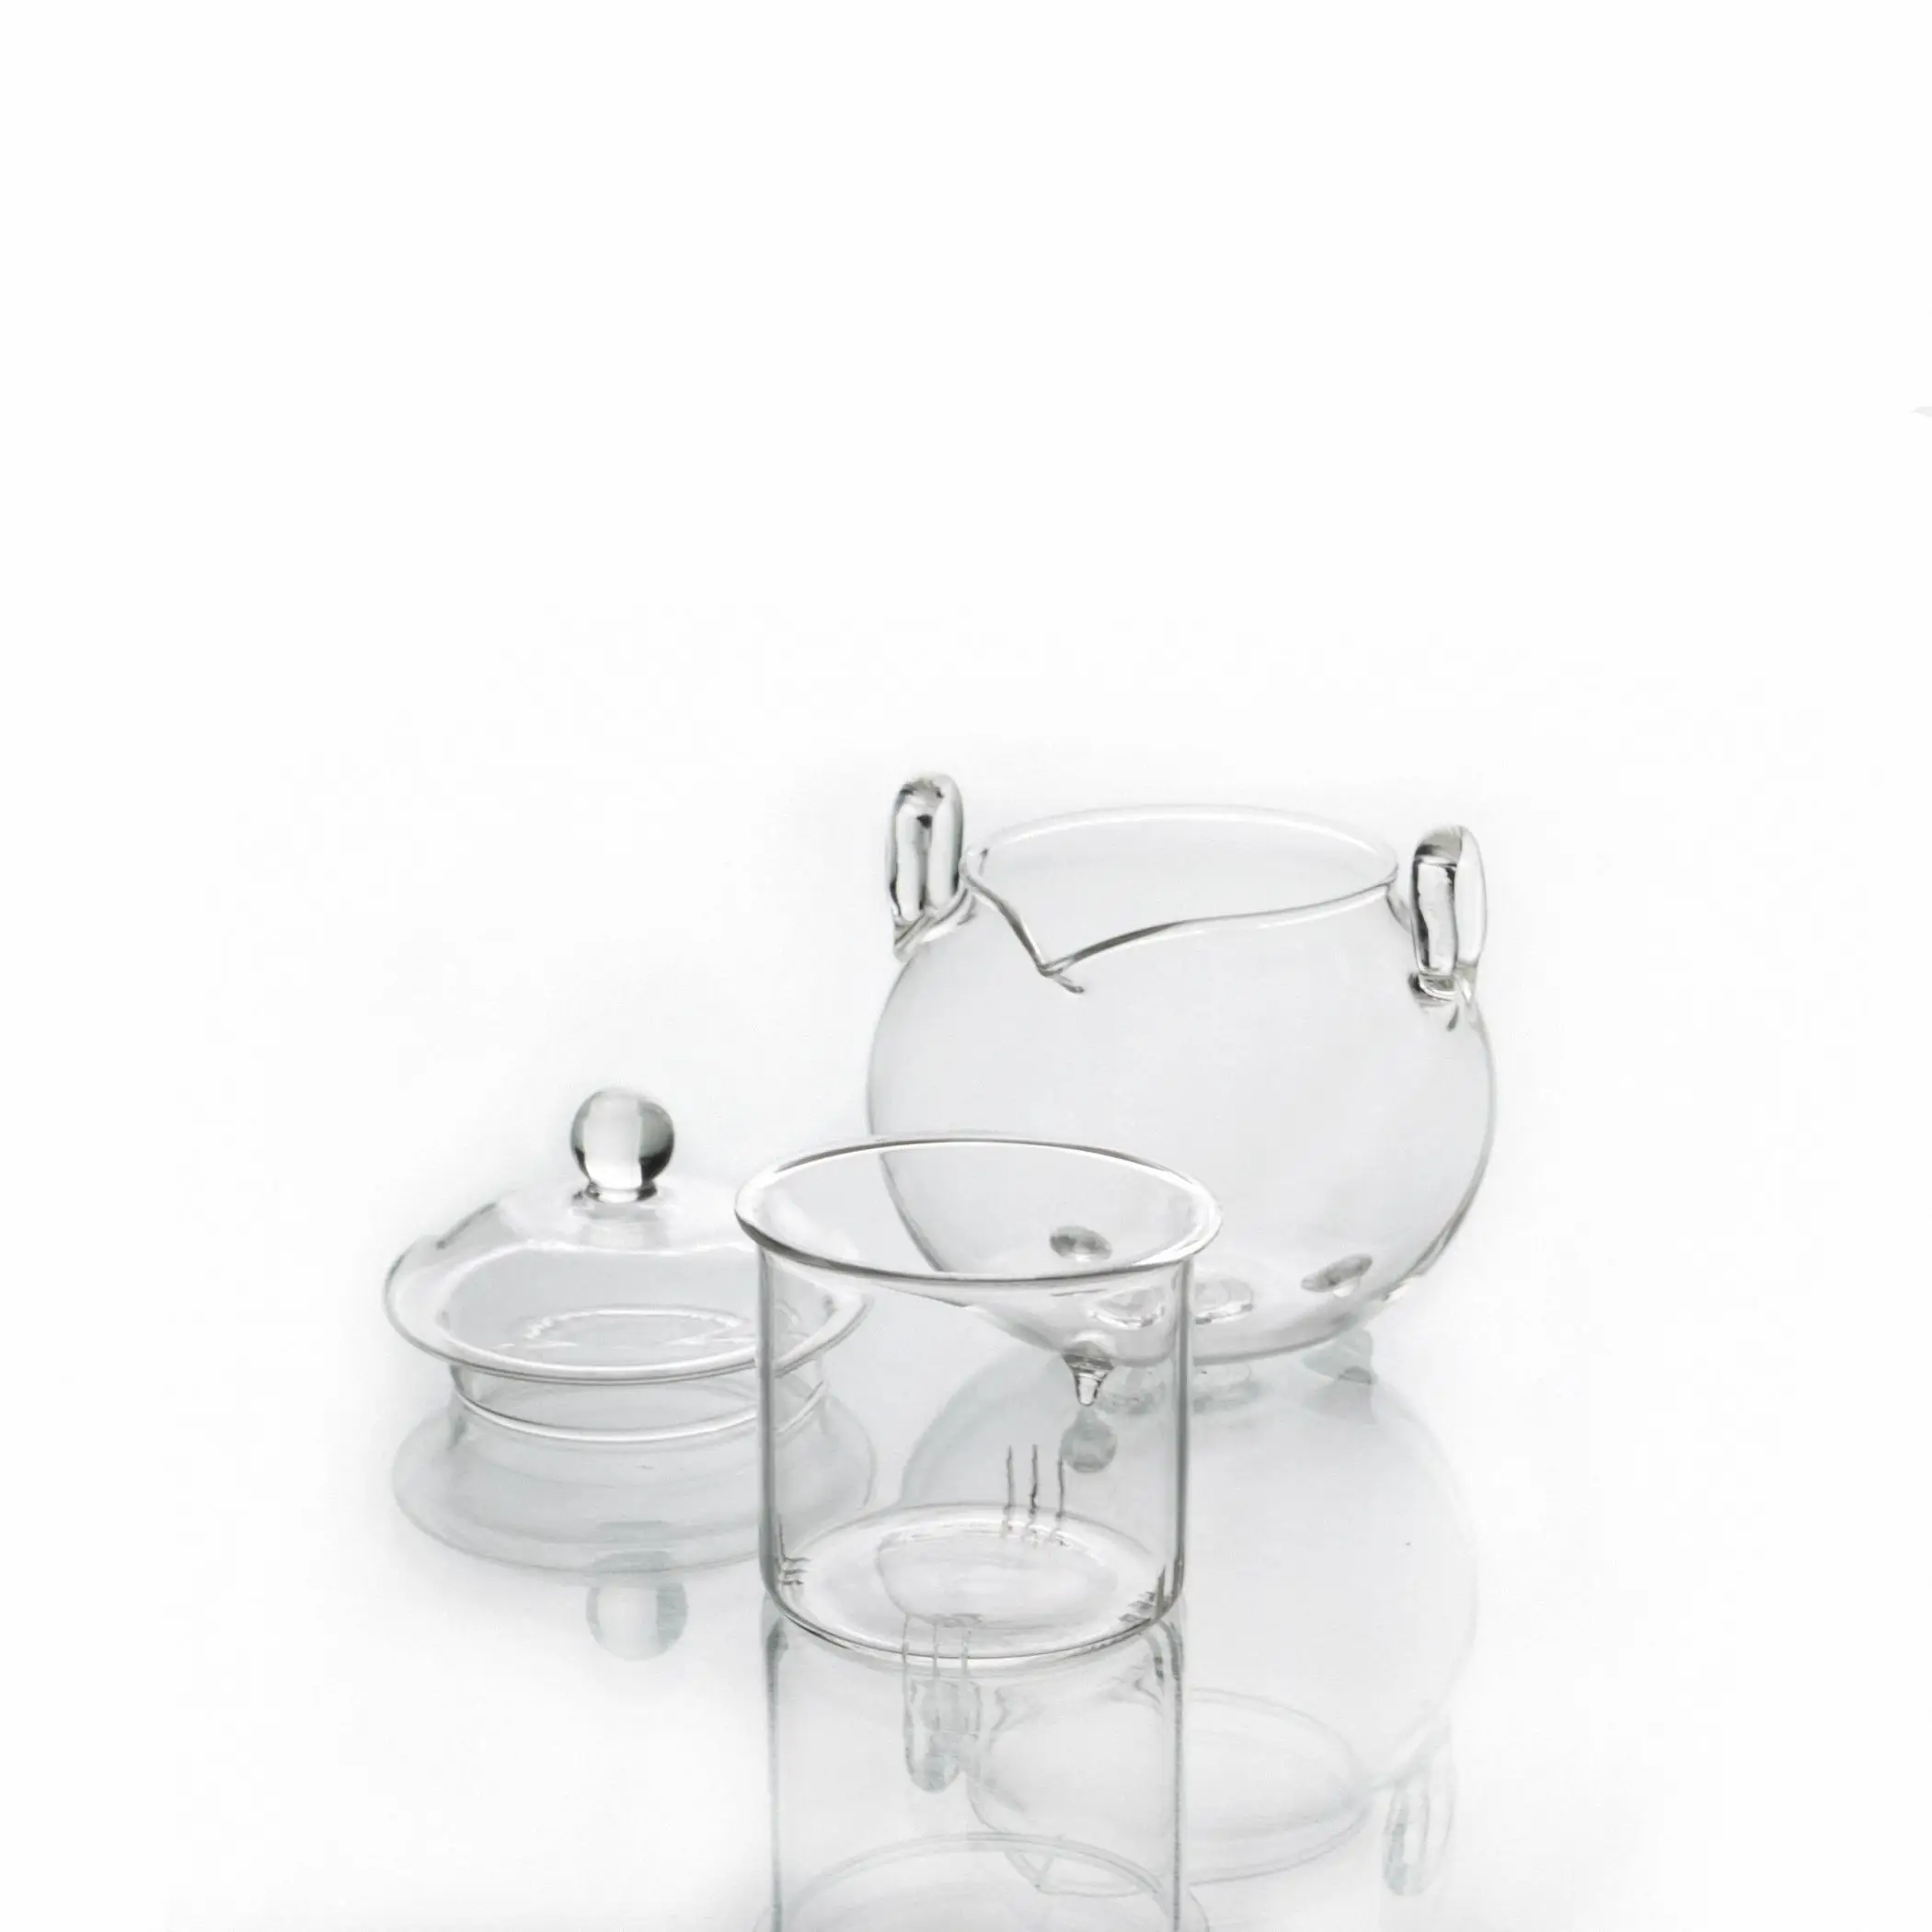 1x245 мл маленькие термостойкие Стеклянные Чайники с двойной ручкой с ушками и прозрачной крышкой для заварки чая ручной работы